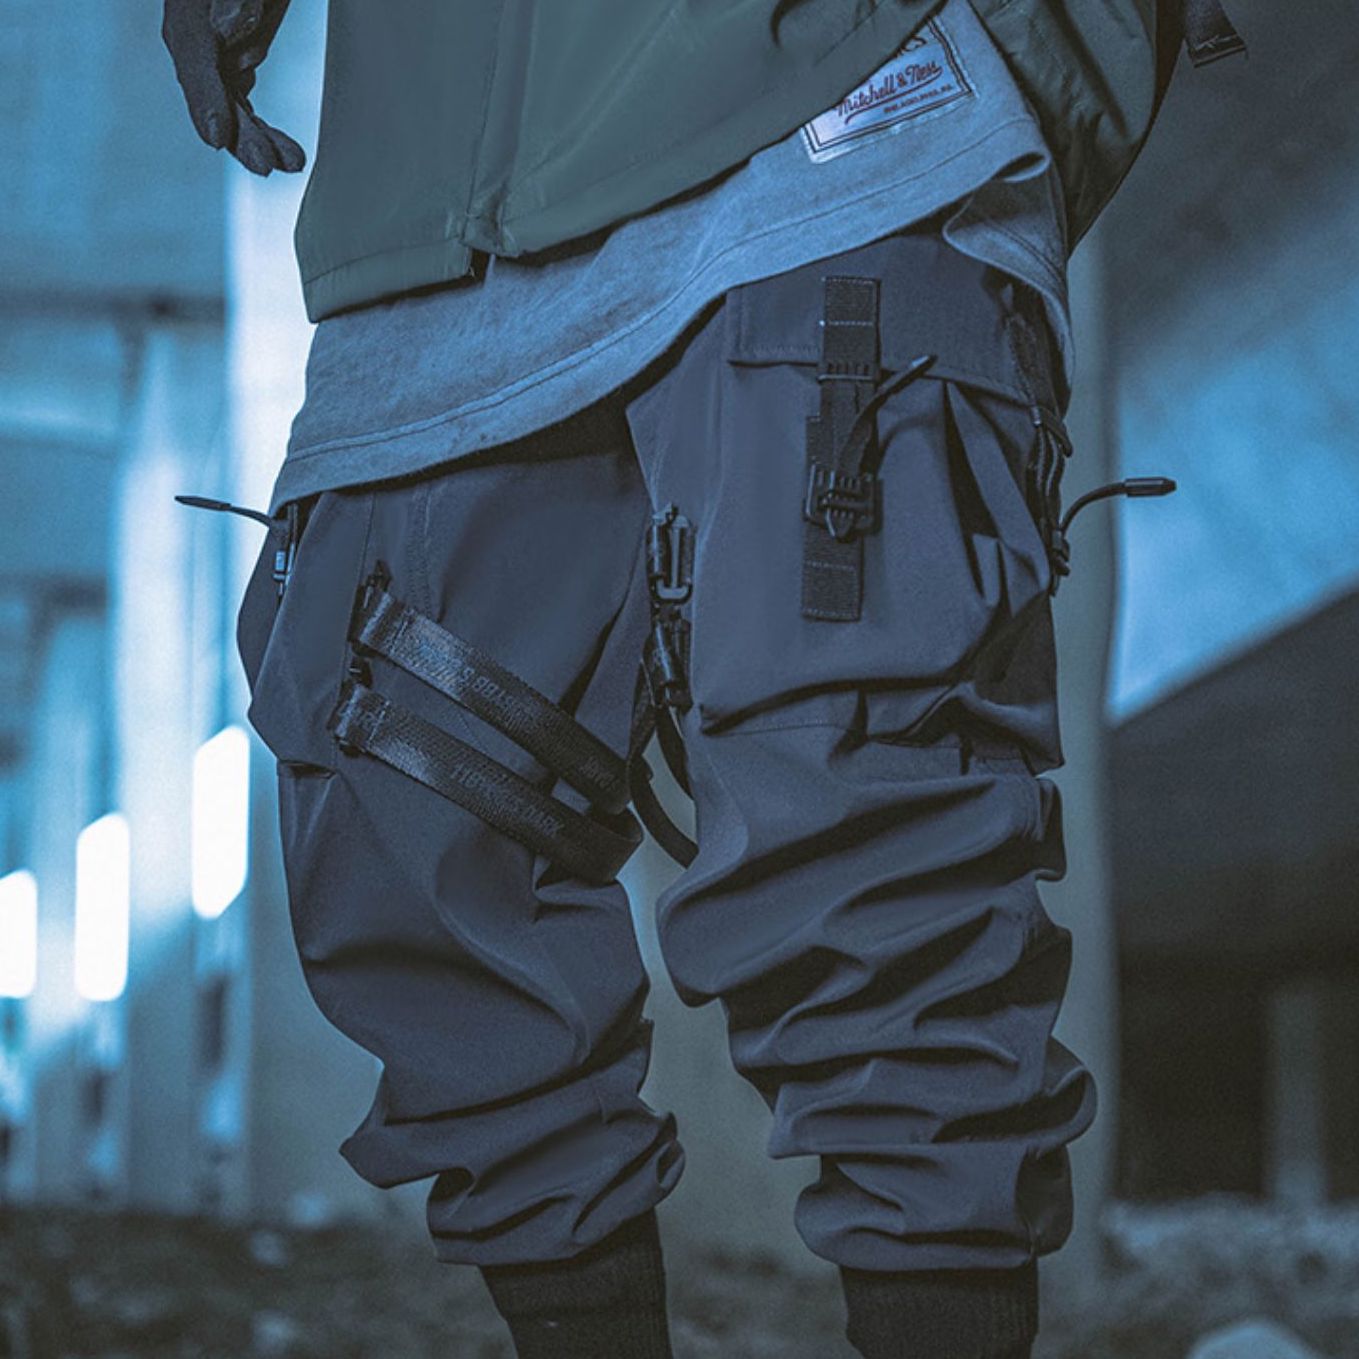 Yoshiyari Heavy Industries] Buckle tactical pants